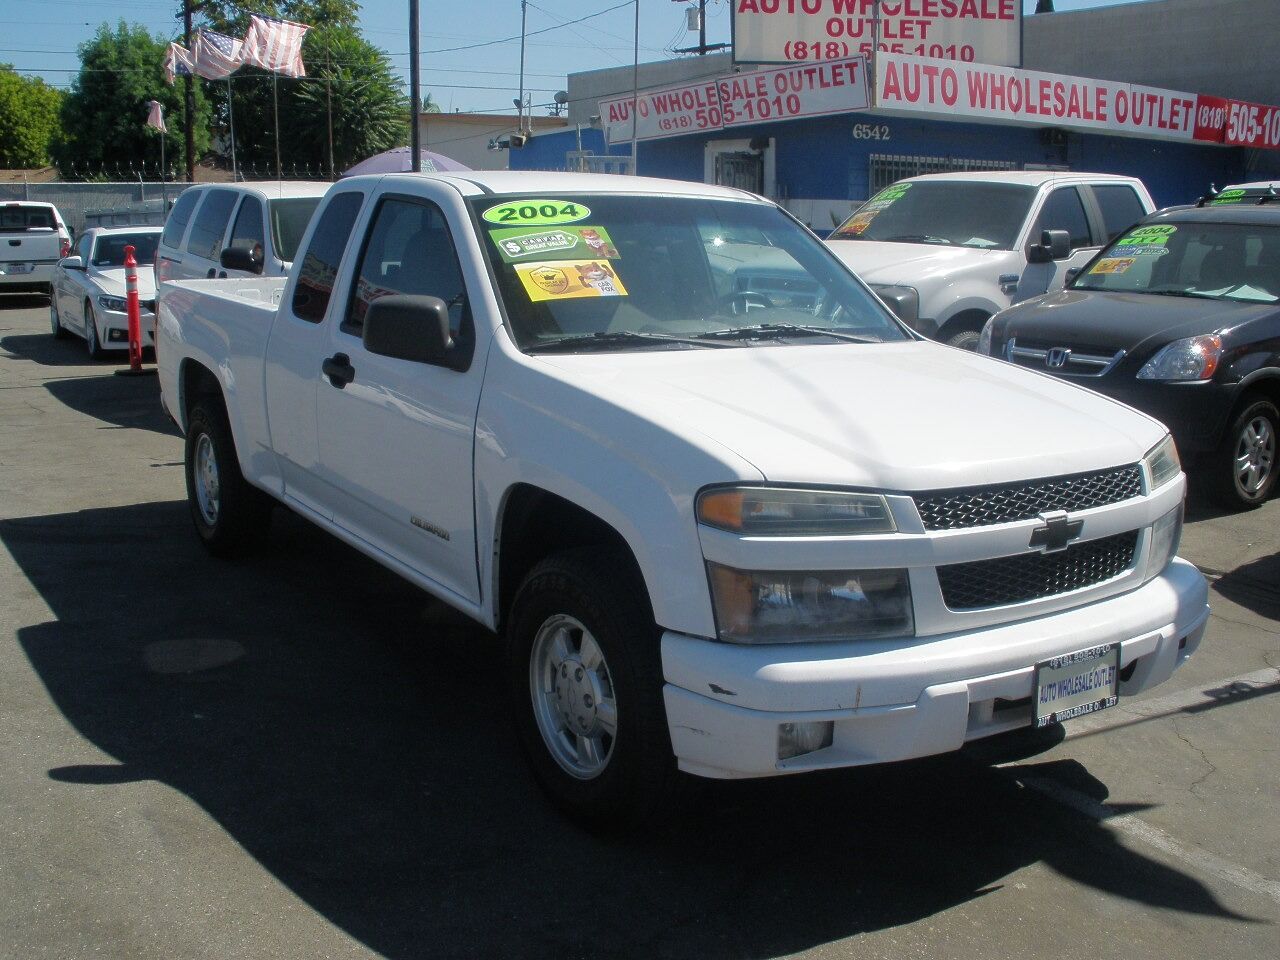 2004 Chevrolet Colorado For Sale - Carsforsale.com®